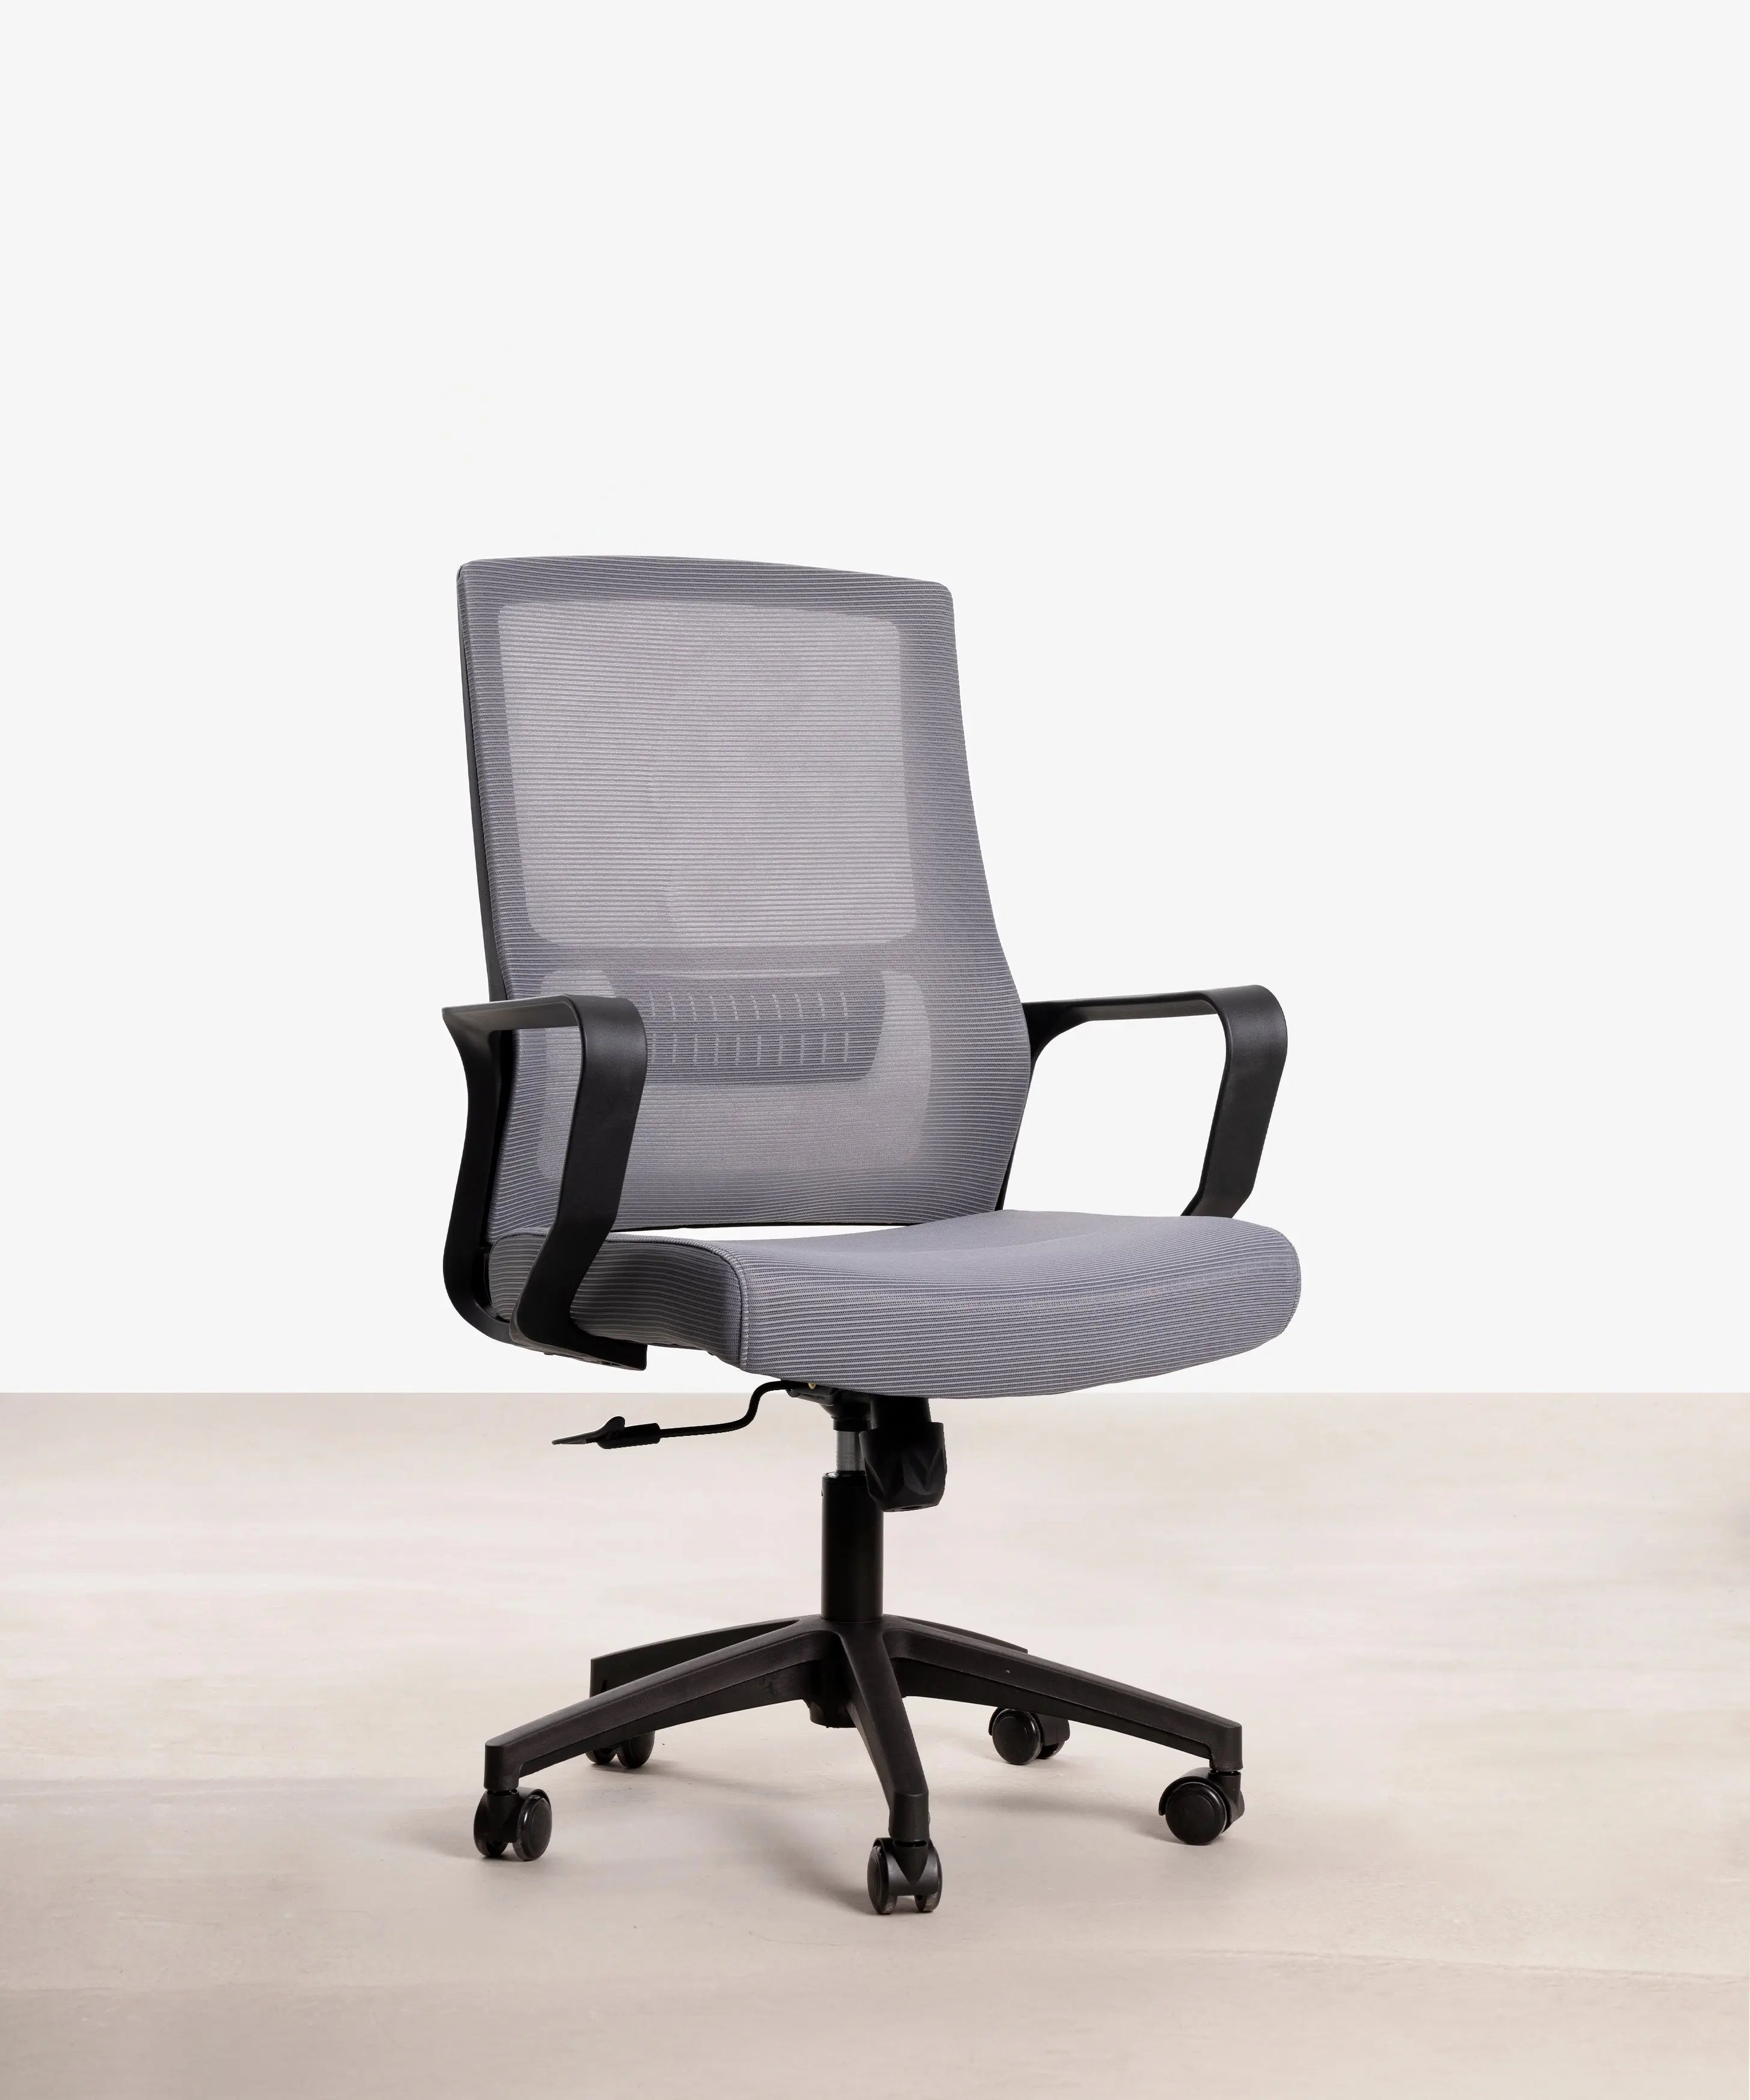 Cómo es una silla de despacho ergonómica? - Foto 1